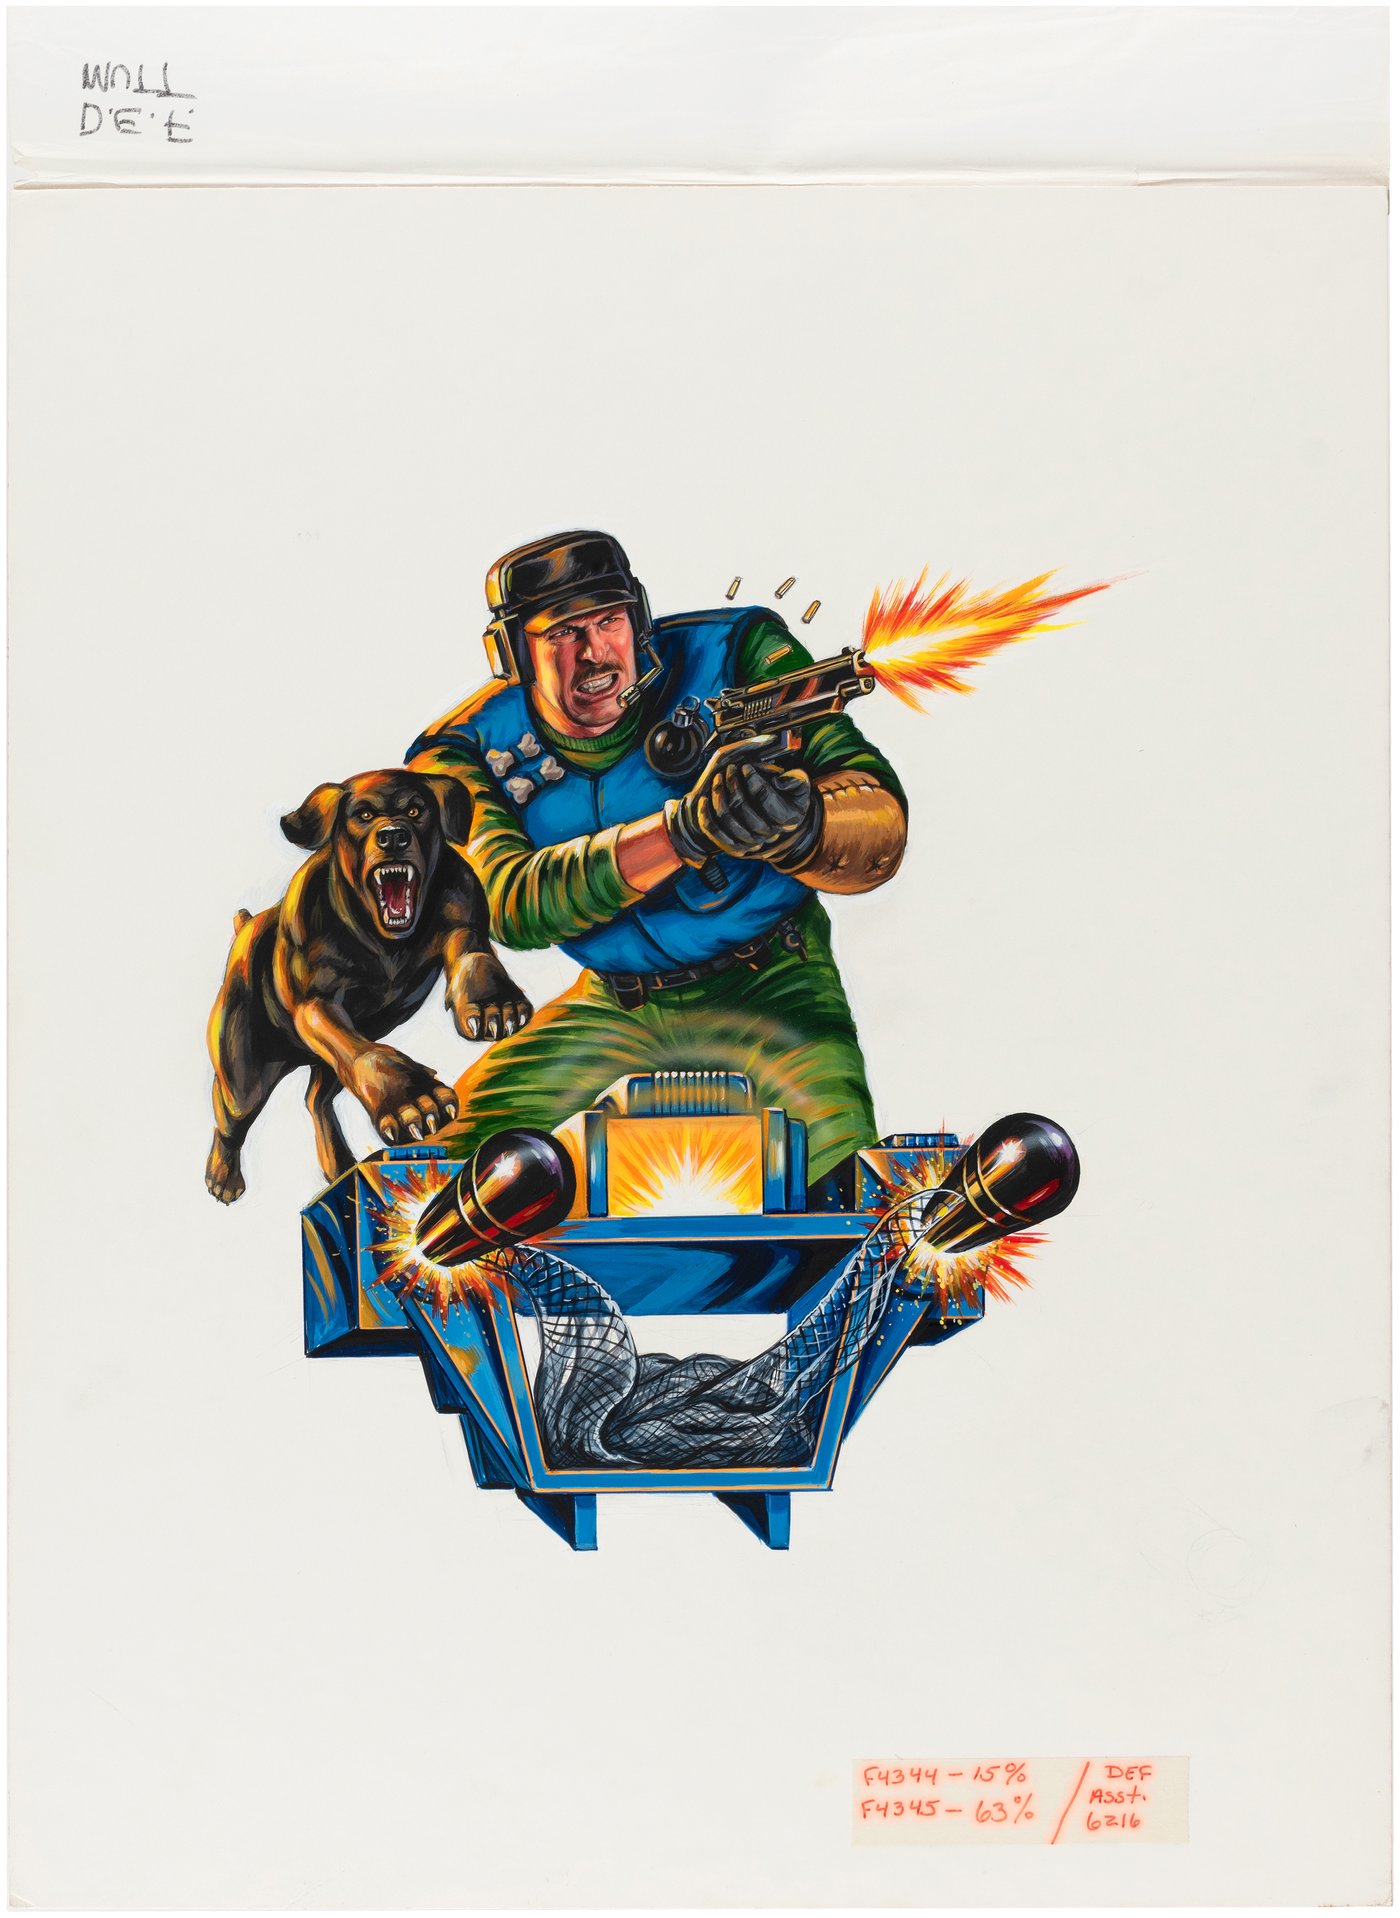 1992 Mutt & Junkyard card art by Doug Hart